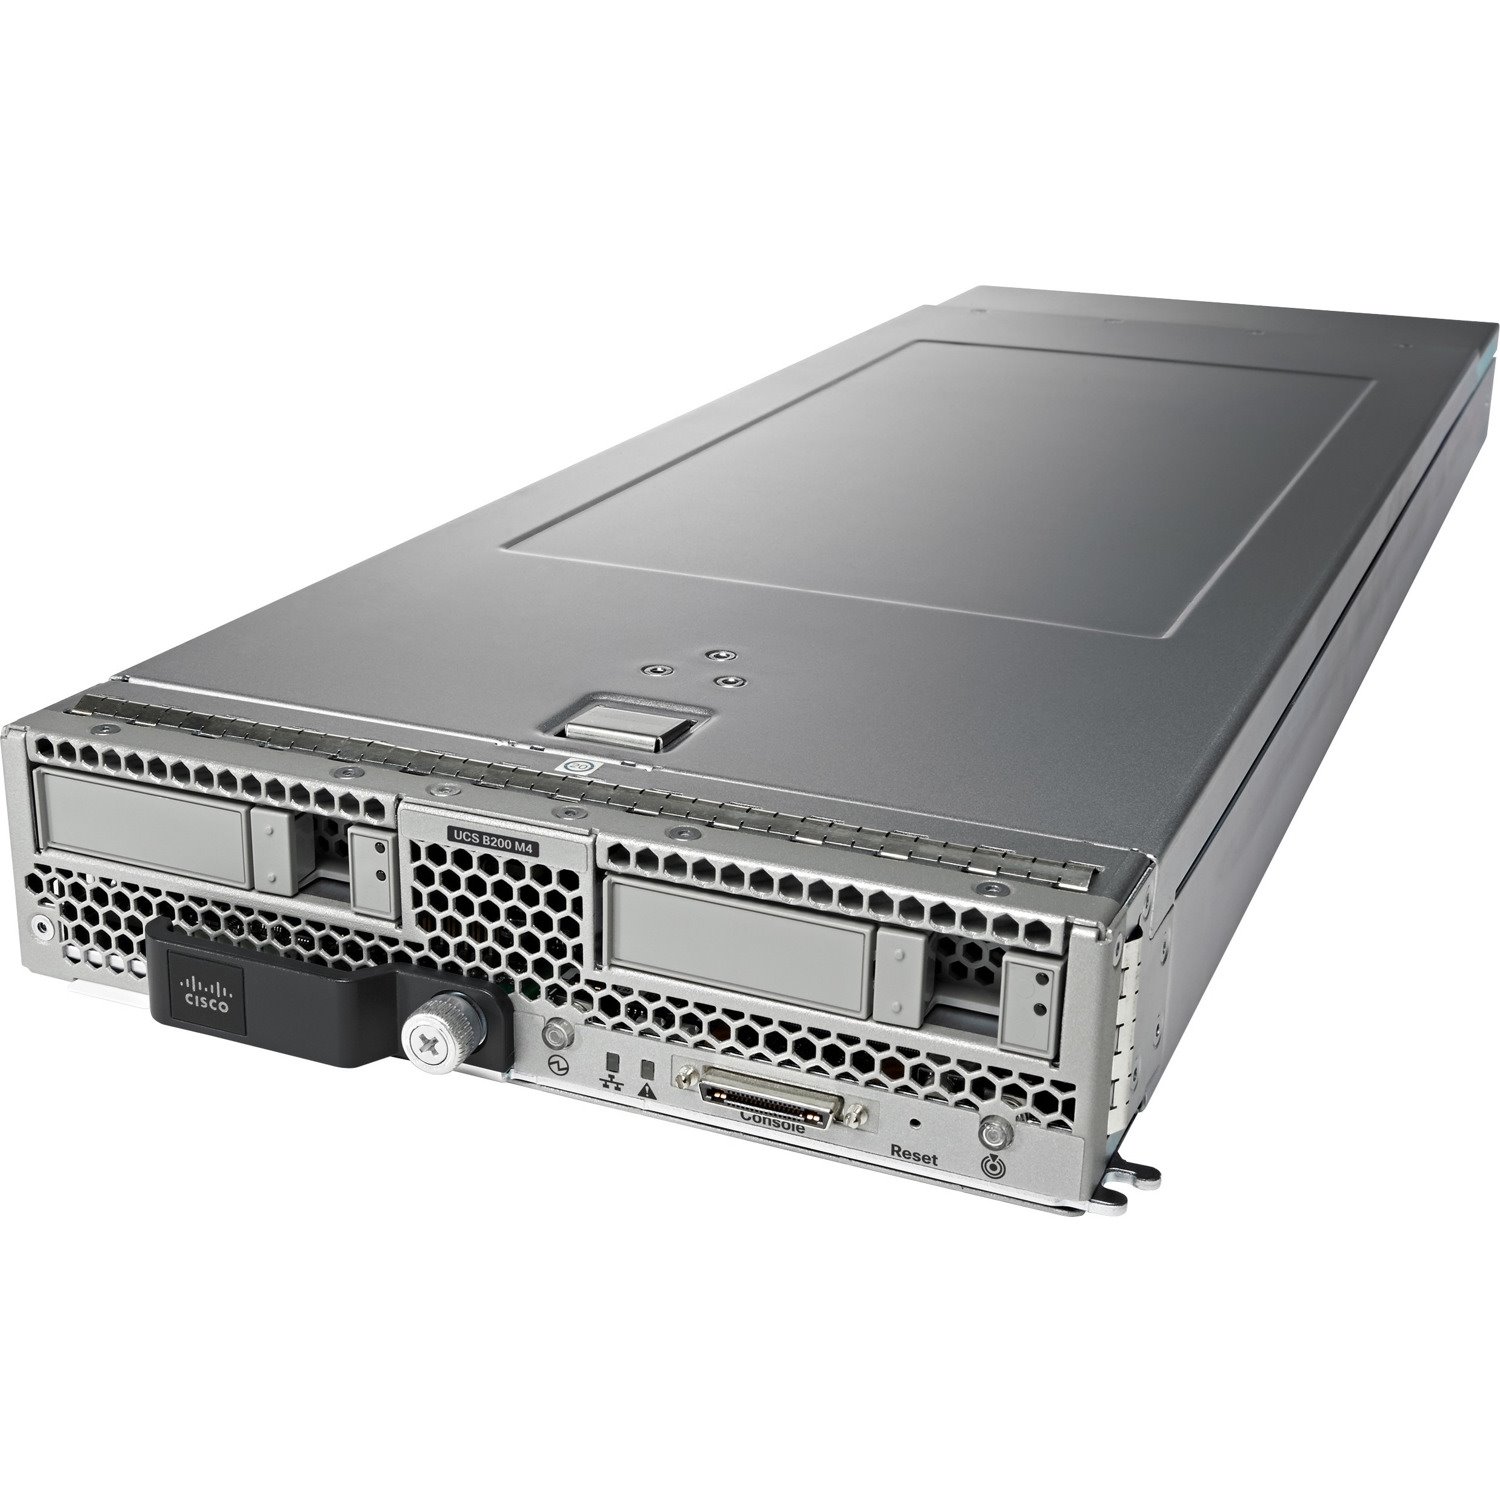 Cisco B200 M4 Blade Server - 2 x Intel Xeon E5-2667 v3 3.20 GHz - 256 GB RAM - Serial Attached SCSI (SAS), Serial ATA Controller